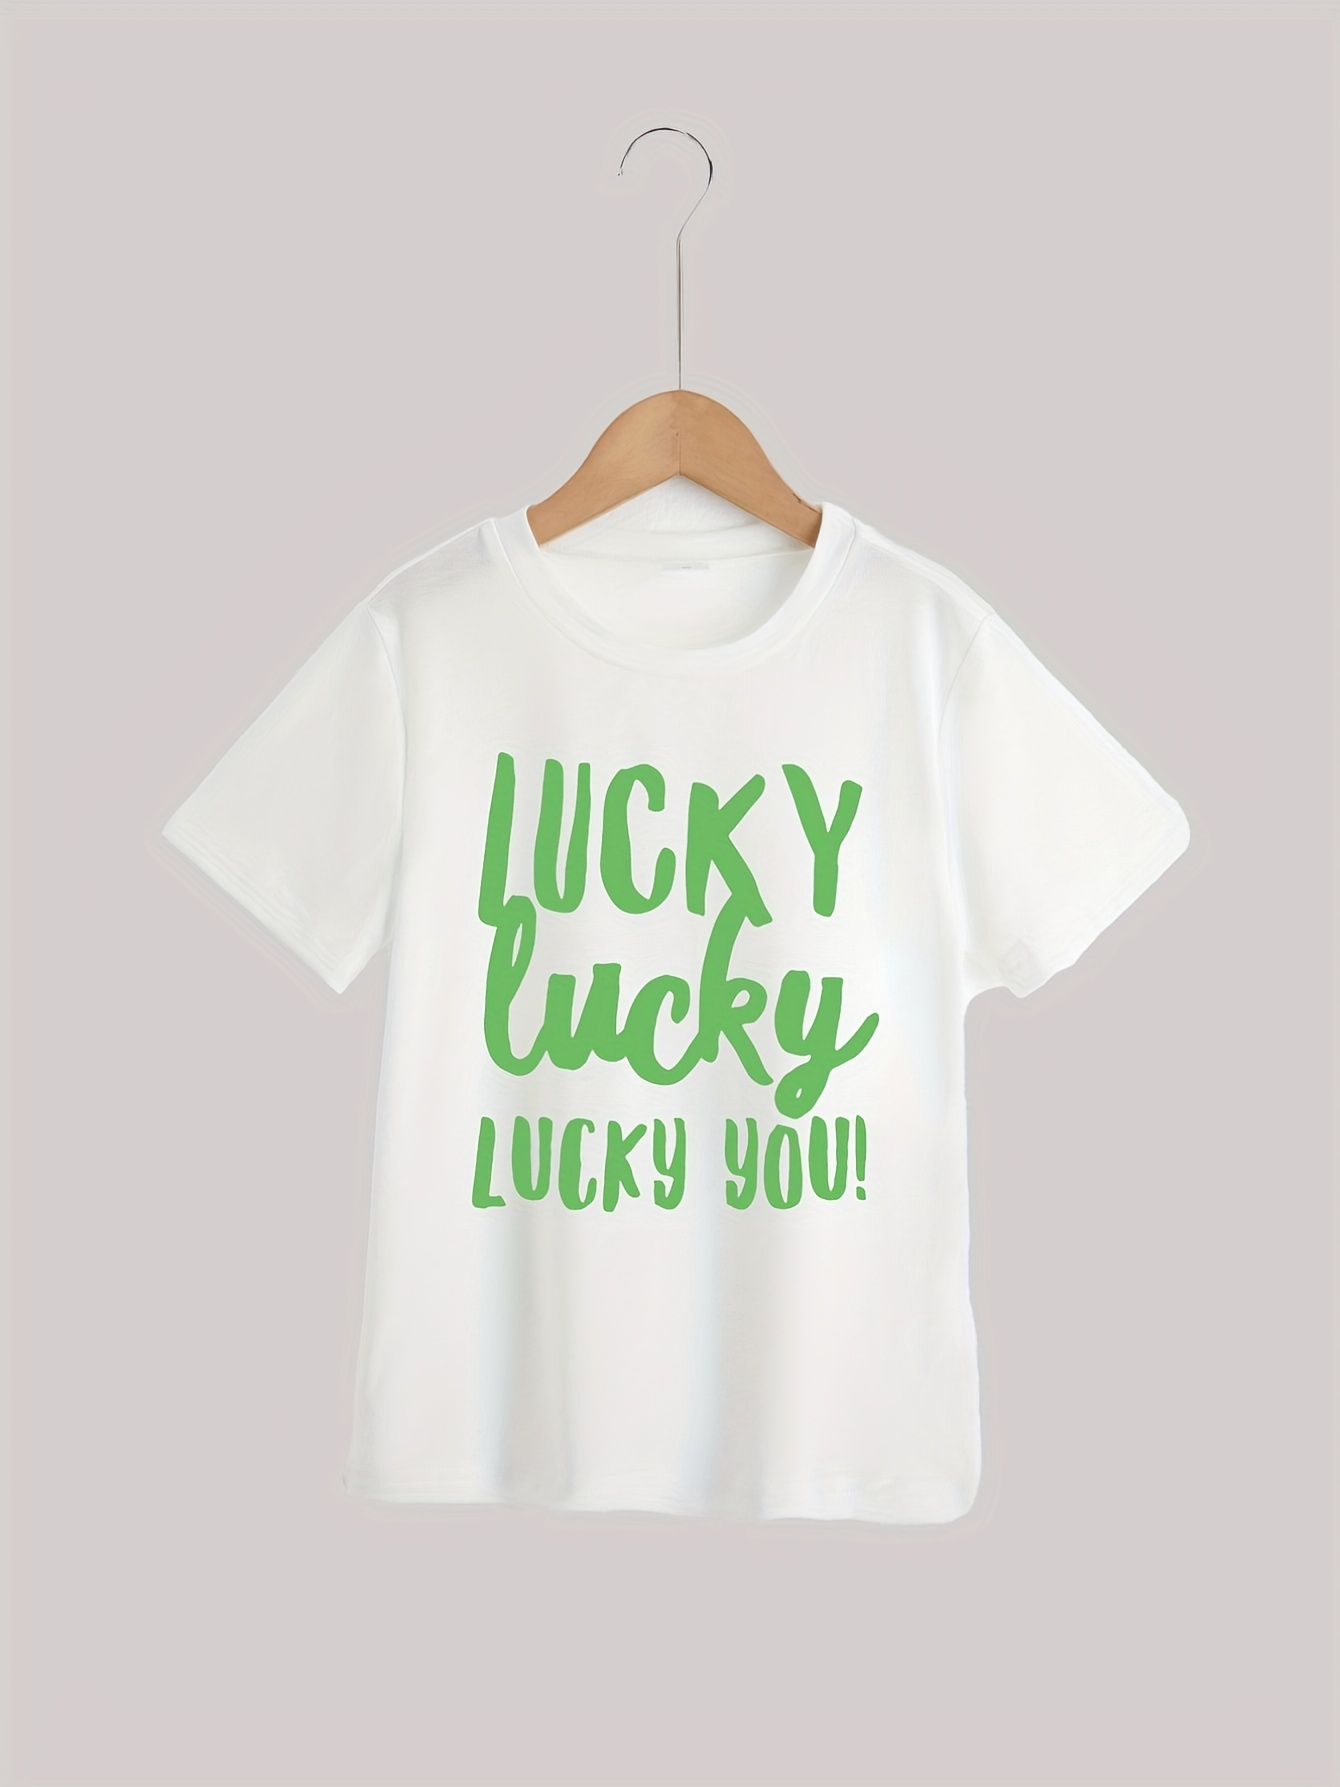 Lucky Brand Men's Lightweight Short Sleeve Graphic T-Shirt